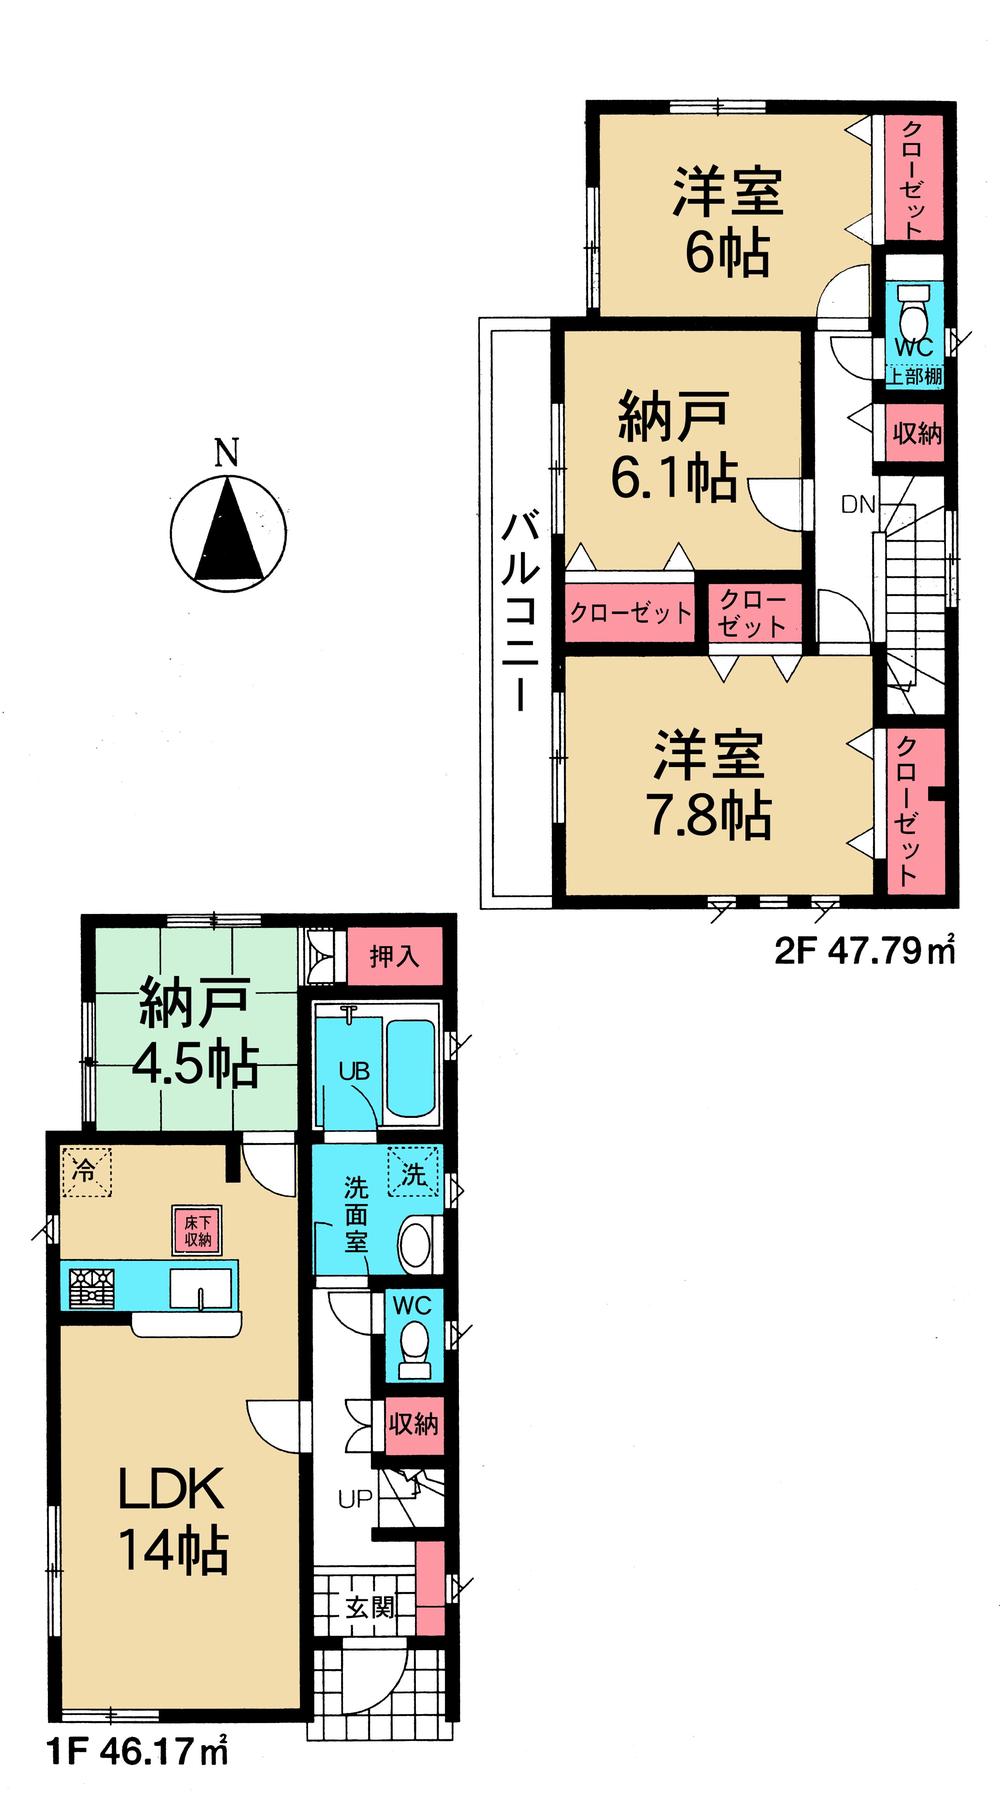 Floor plan. 32,800,000 yen, 2LDK + 2S (storeroom), Land area 106.36 sq m , Building area 93.96 sq m